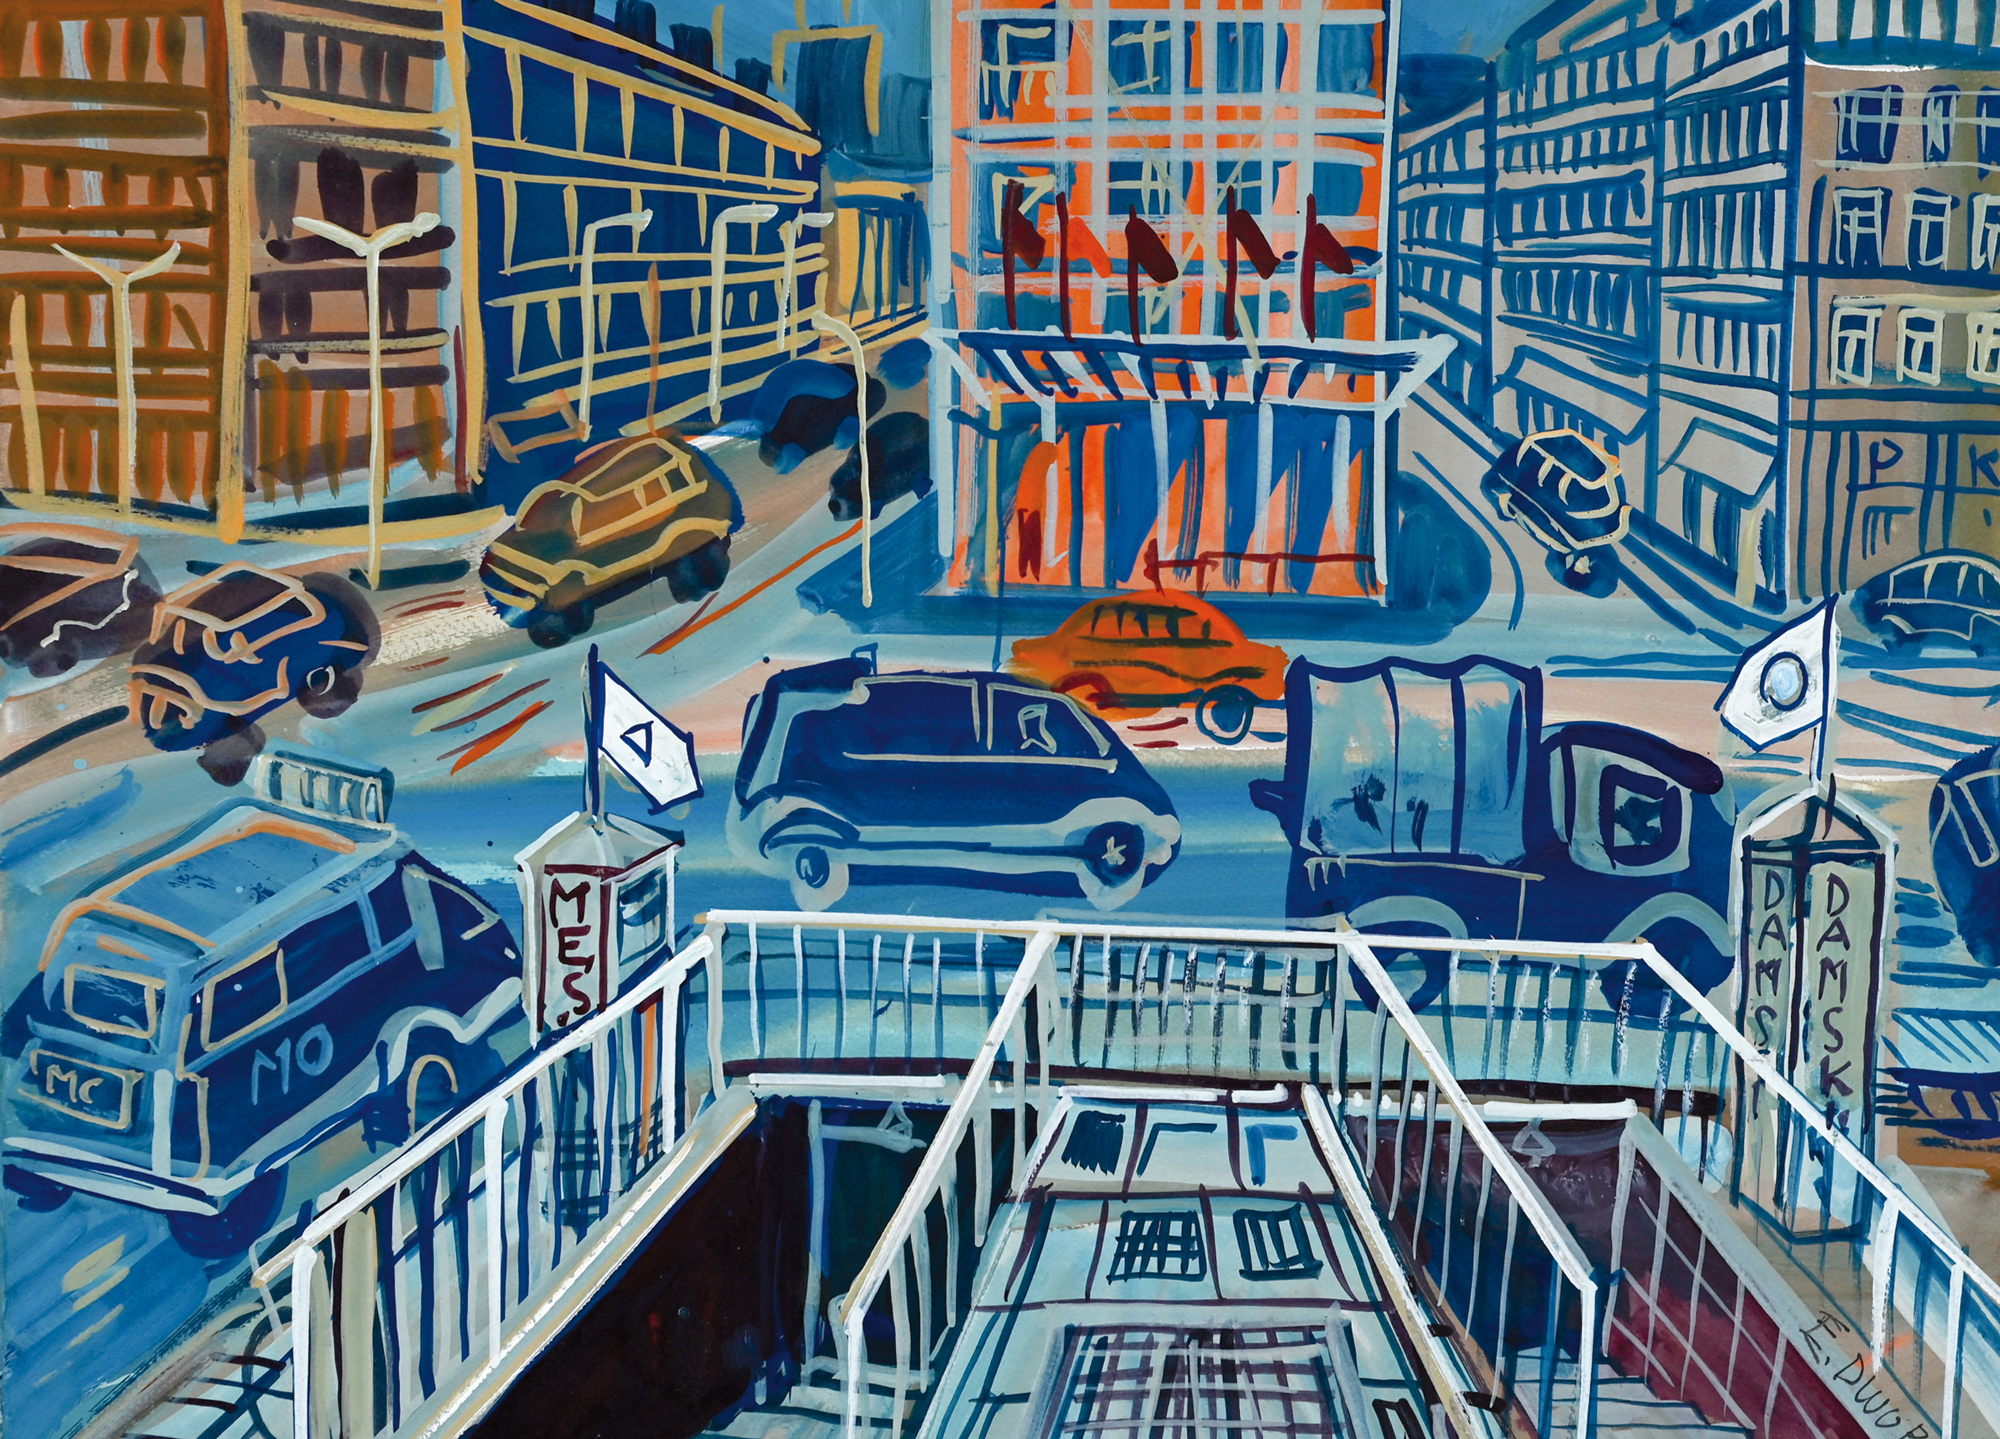 akwarela Edwarda Dwurnika - ulica z samochodami, utrzymana w niebieskiej kolorystyce